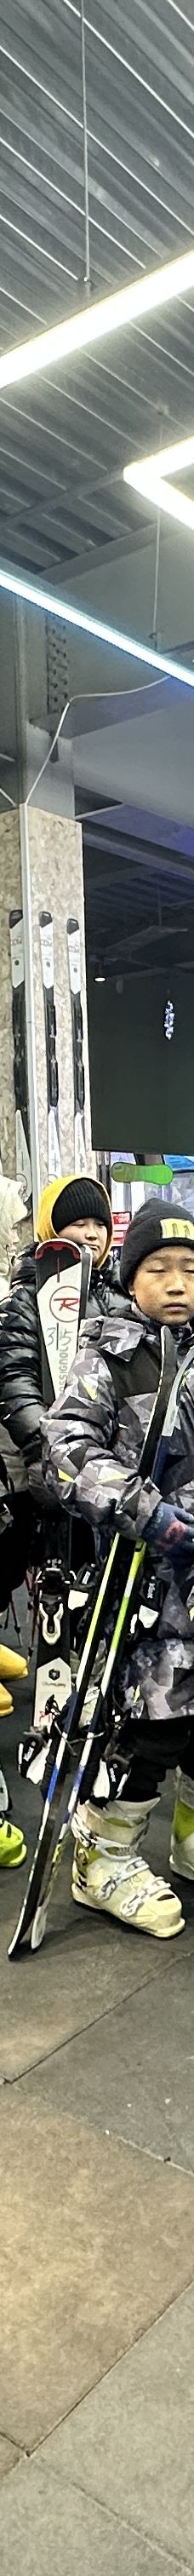 奥悦碾子山国际滑雪场-齐齐哈尔